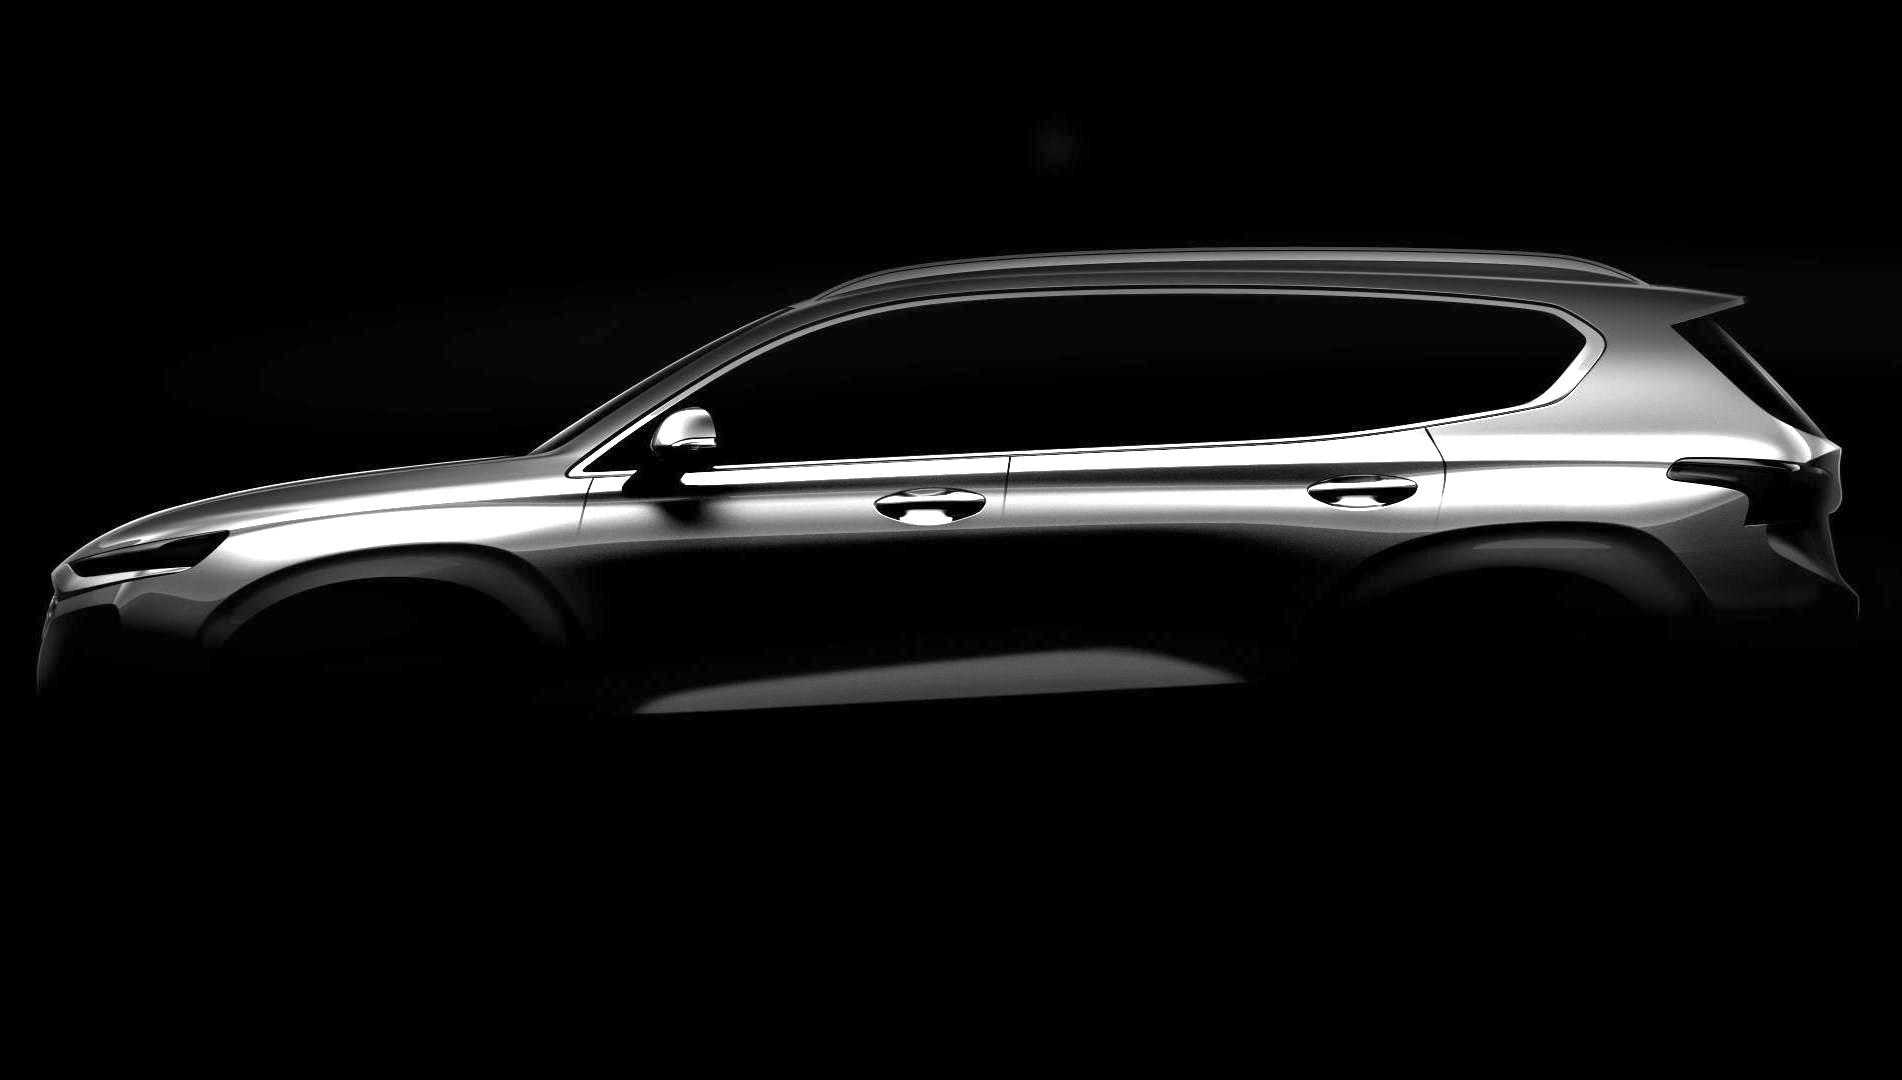 2019 Hyundai Santa Fe previewed, debuts at Geneva show